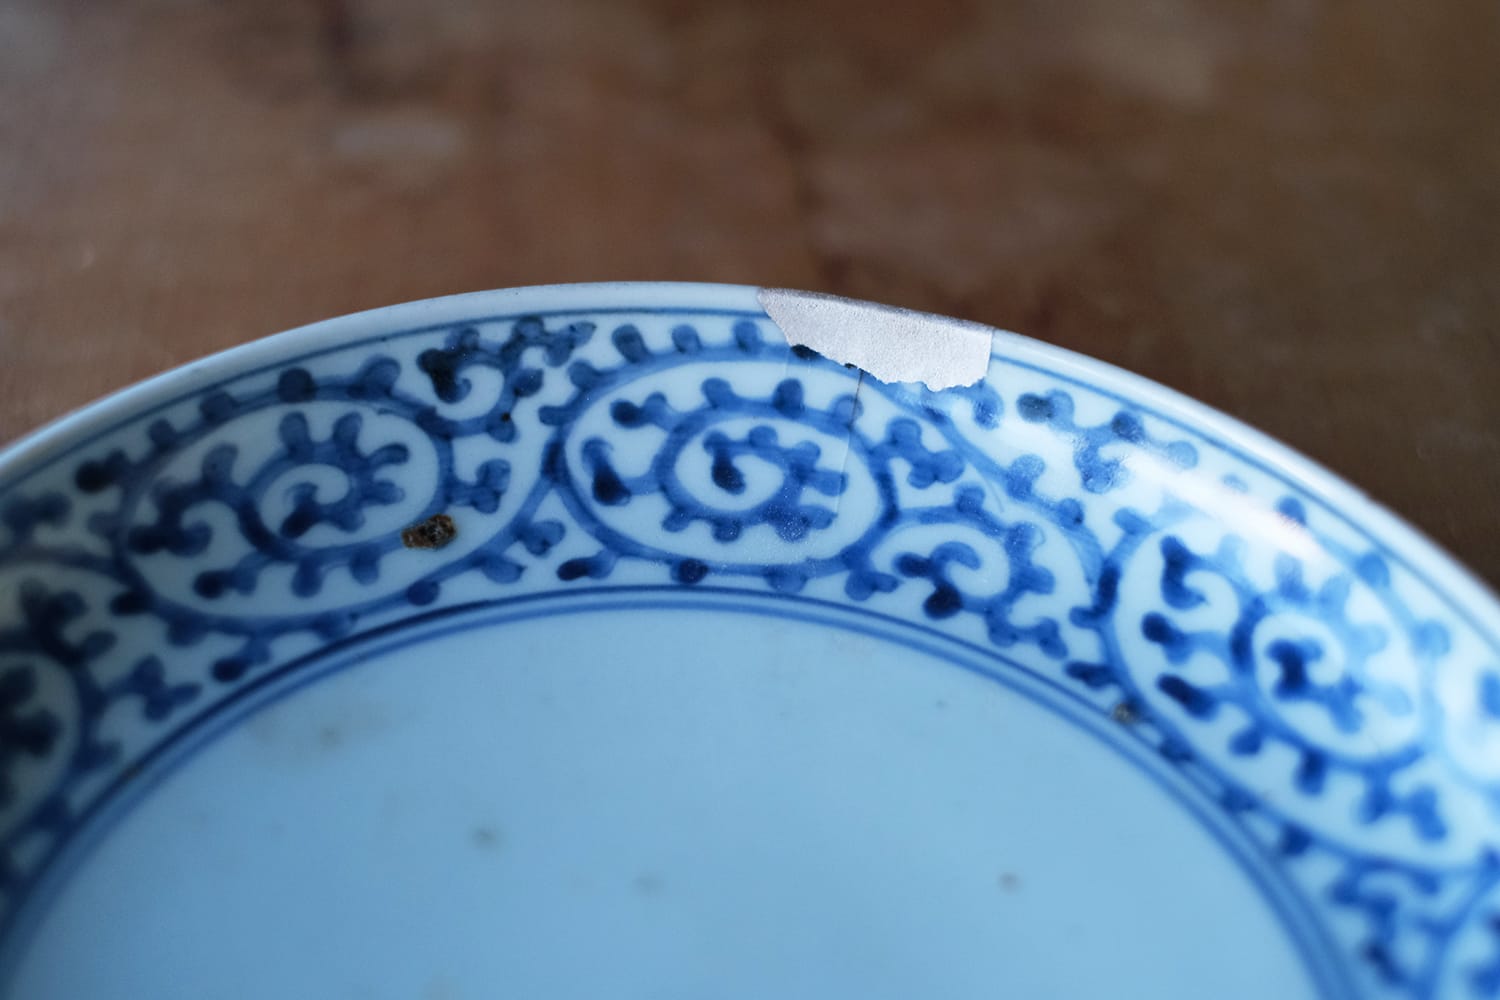 欠けた部分を刻芋漆と銀継ぎで補修した蛸唐草文様の古伊万里の皿